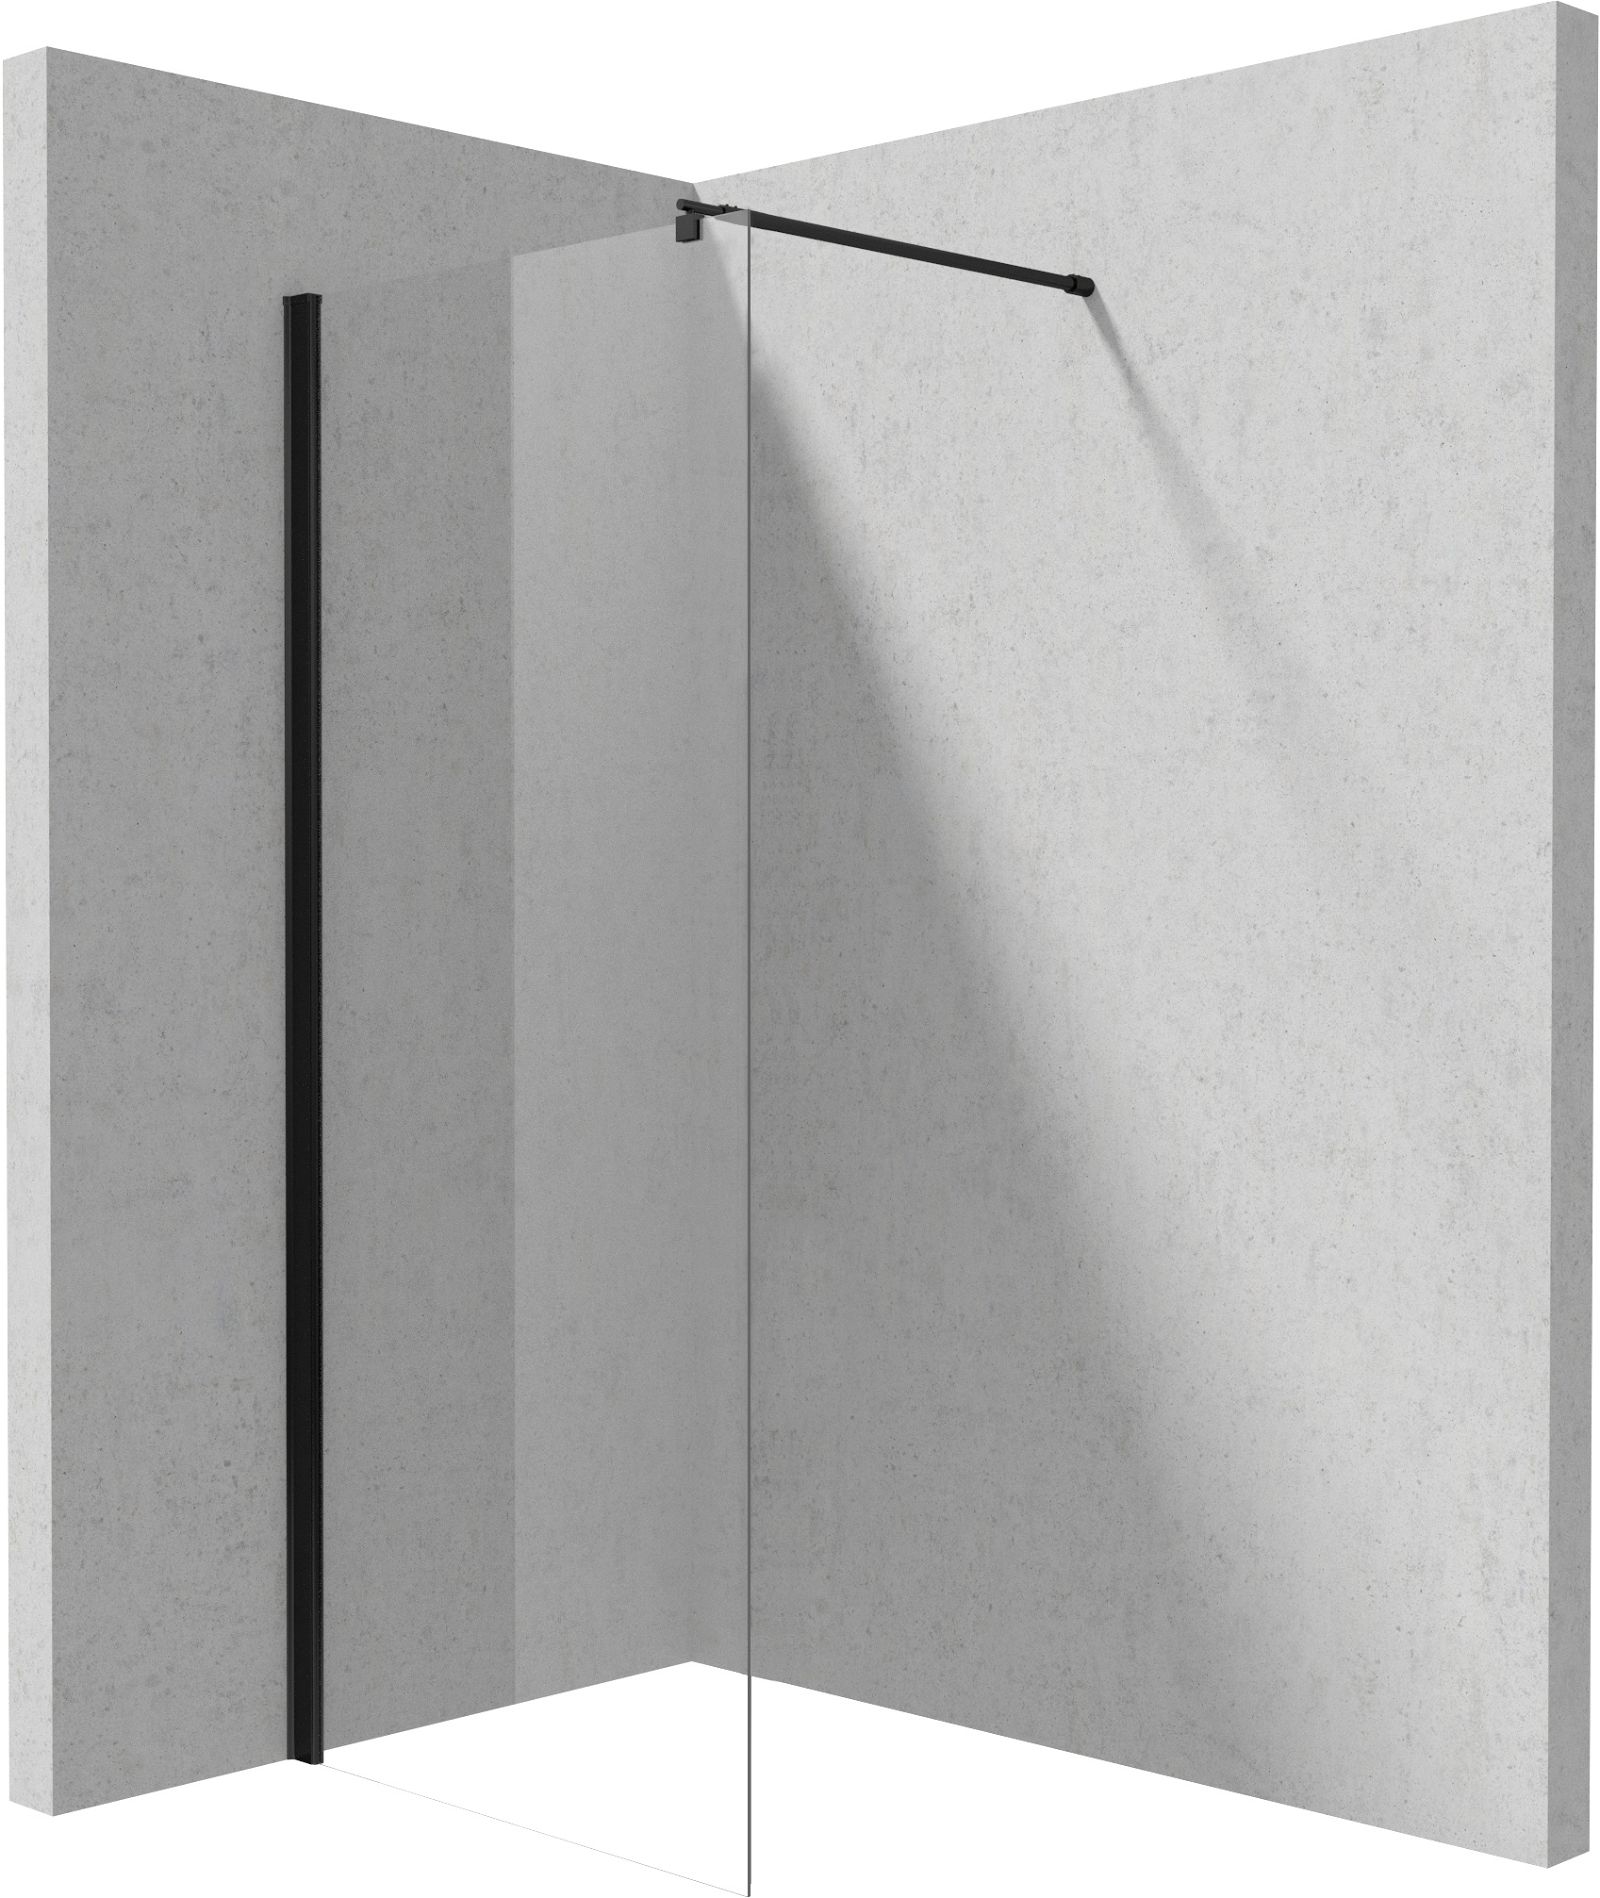 Shower wall / walk-in, Kerria Plus system, 80 cm - KTS_N38P - Główne zdjęcie produktowe